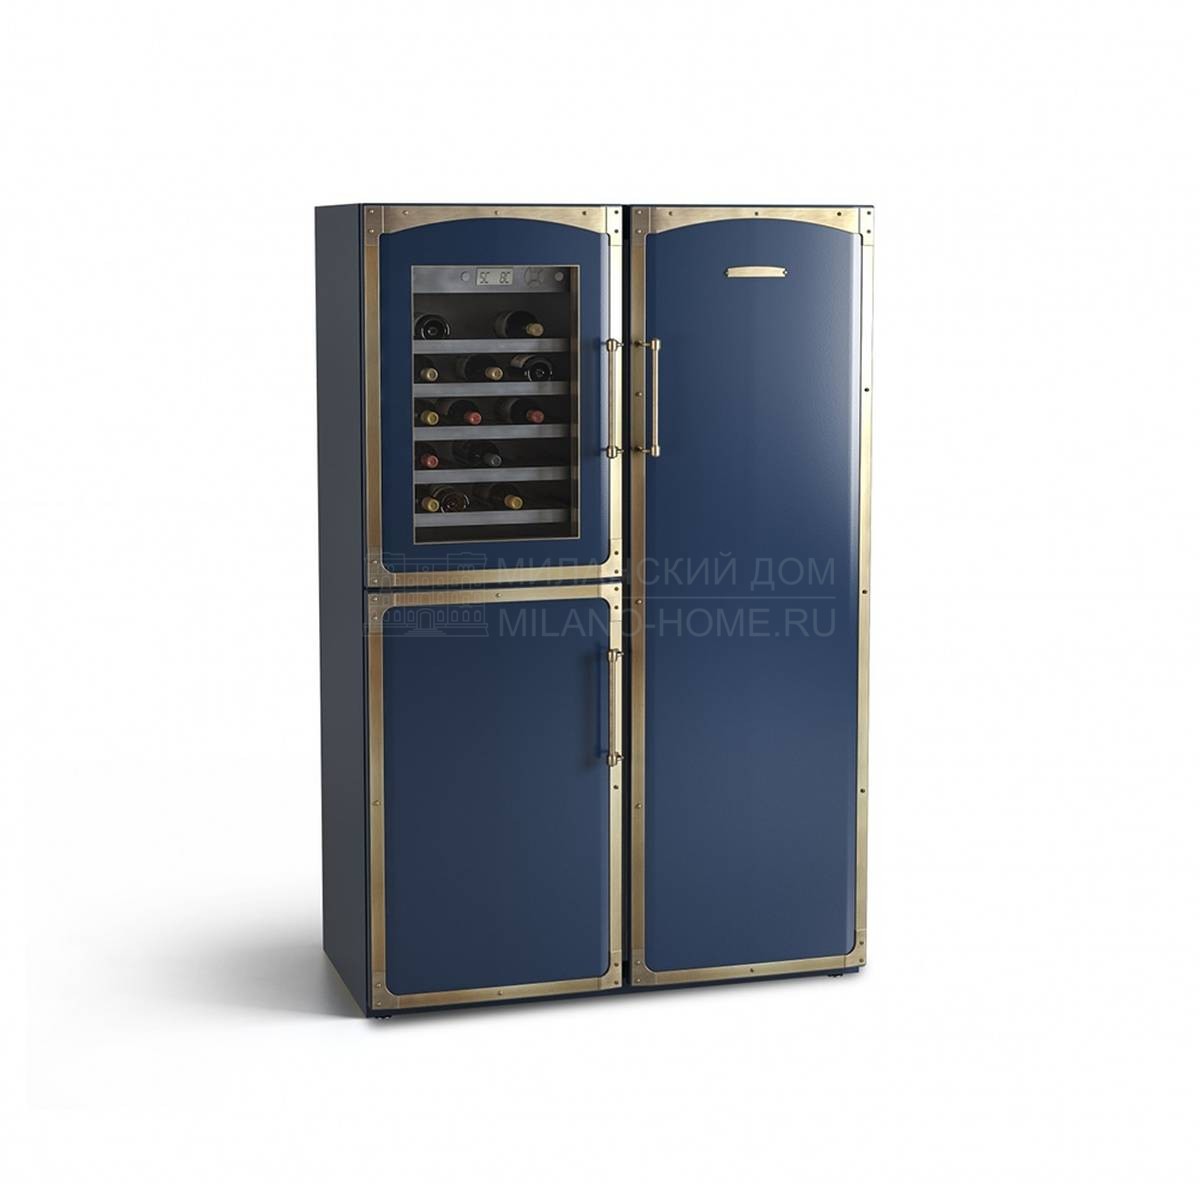 Холодильник-морозильник с винным погребом Fridge-freezer with wine cellar premium series из Италии фабрики OFFICINE GULLO